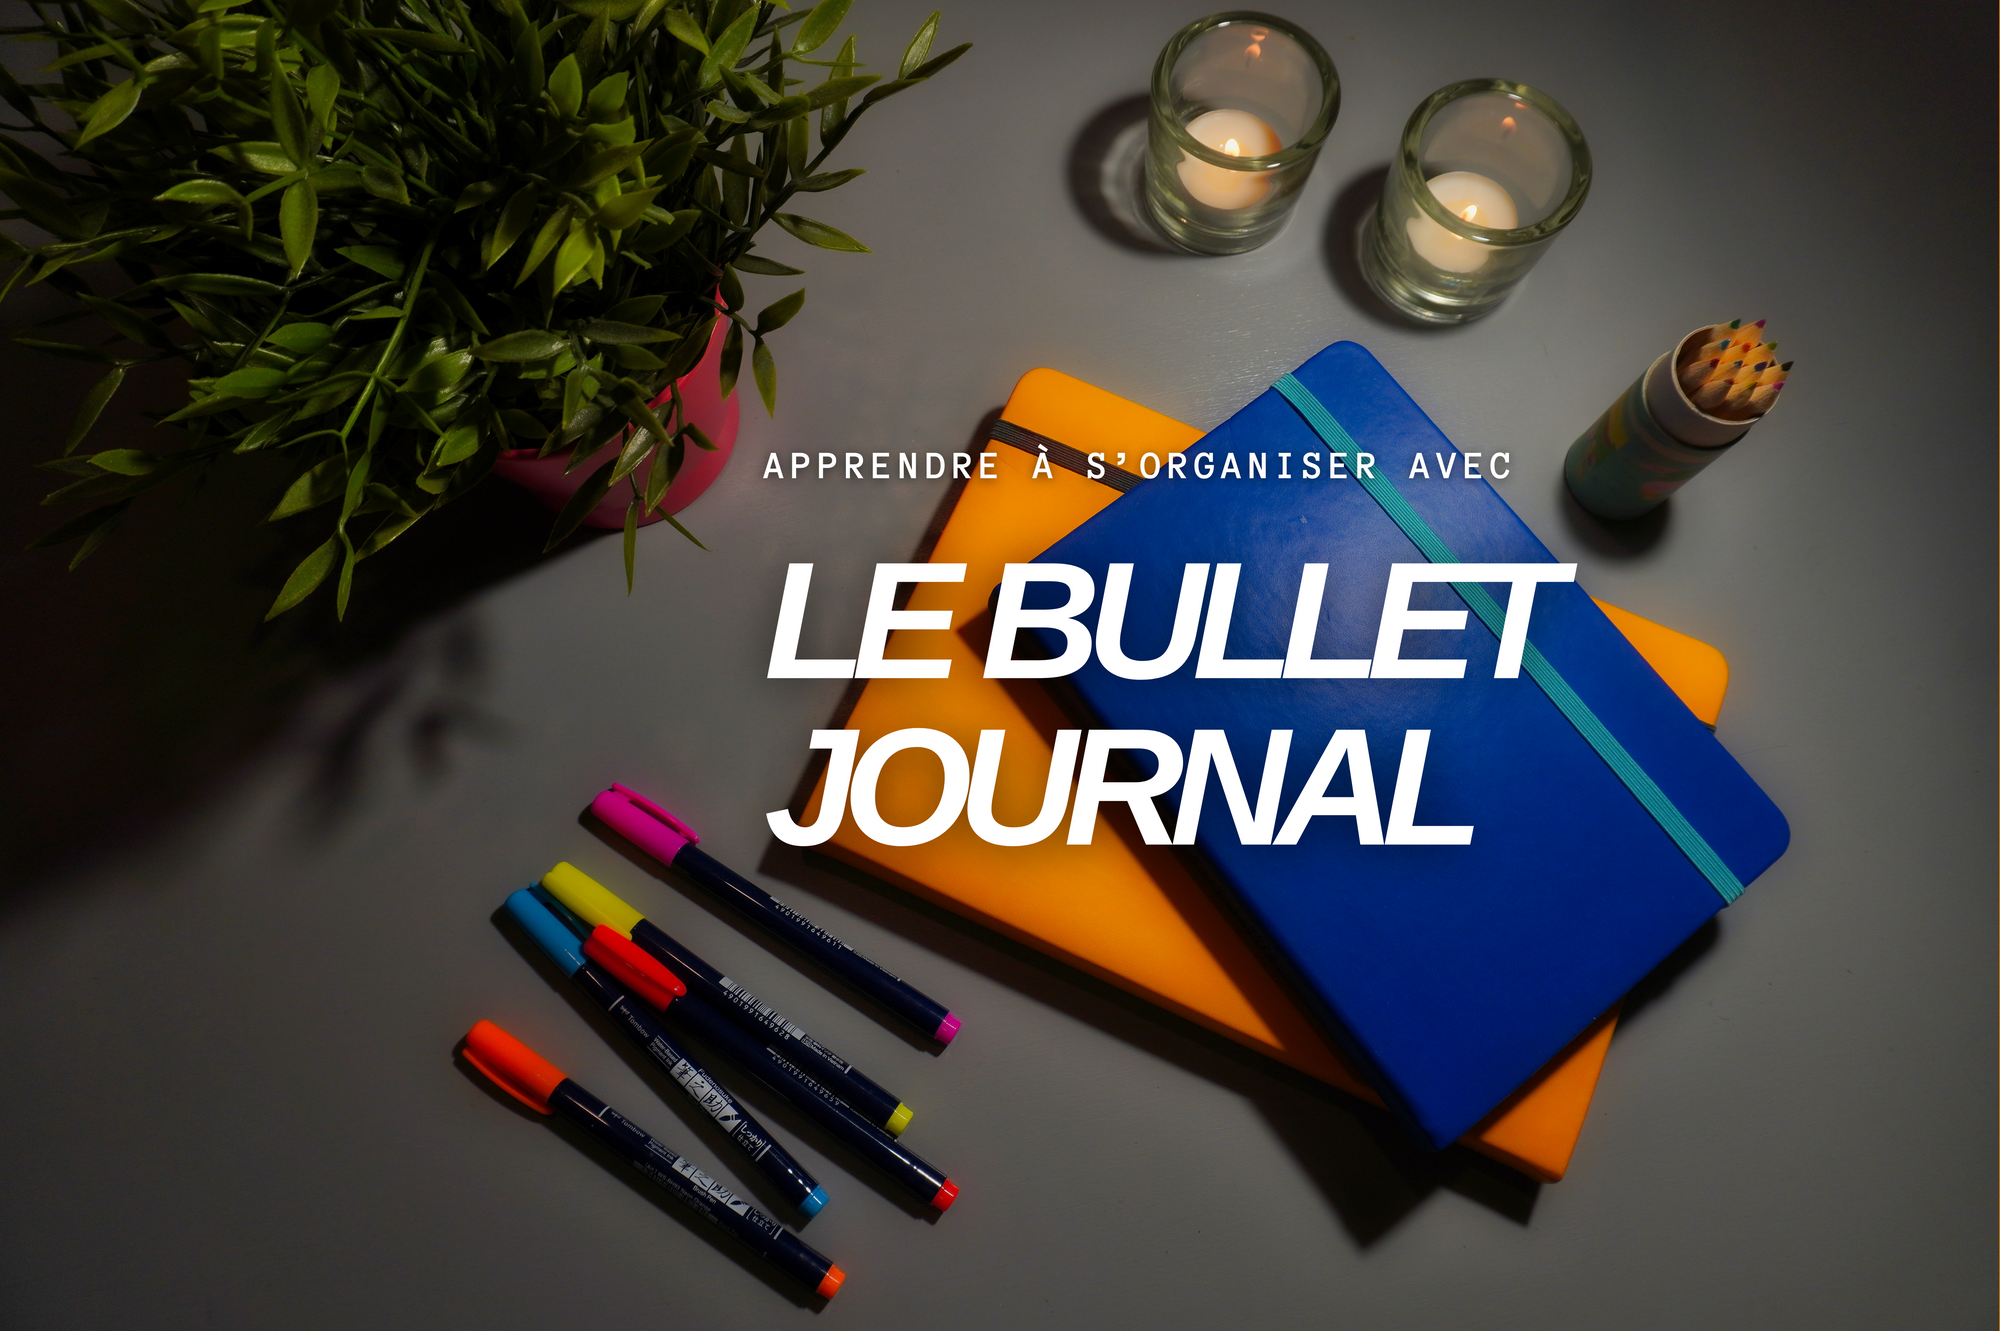 Le Bullet Journal, ton journal d'organisation - Je suis débordée